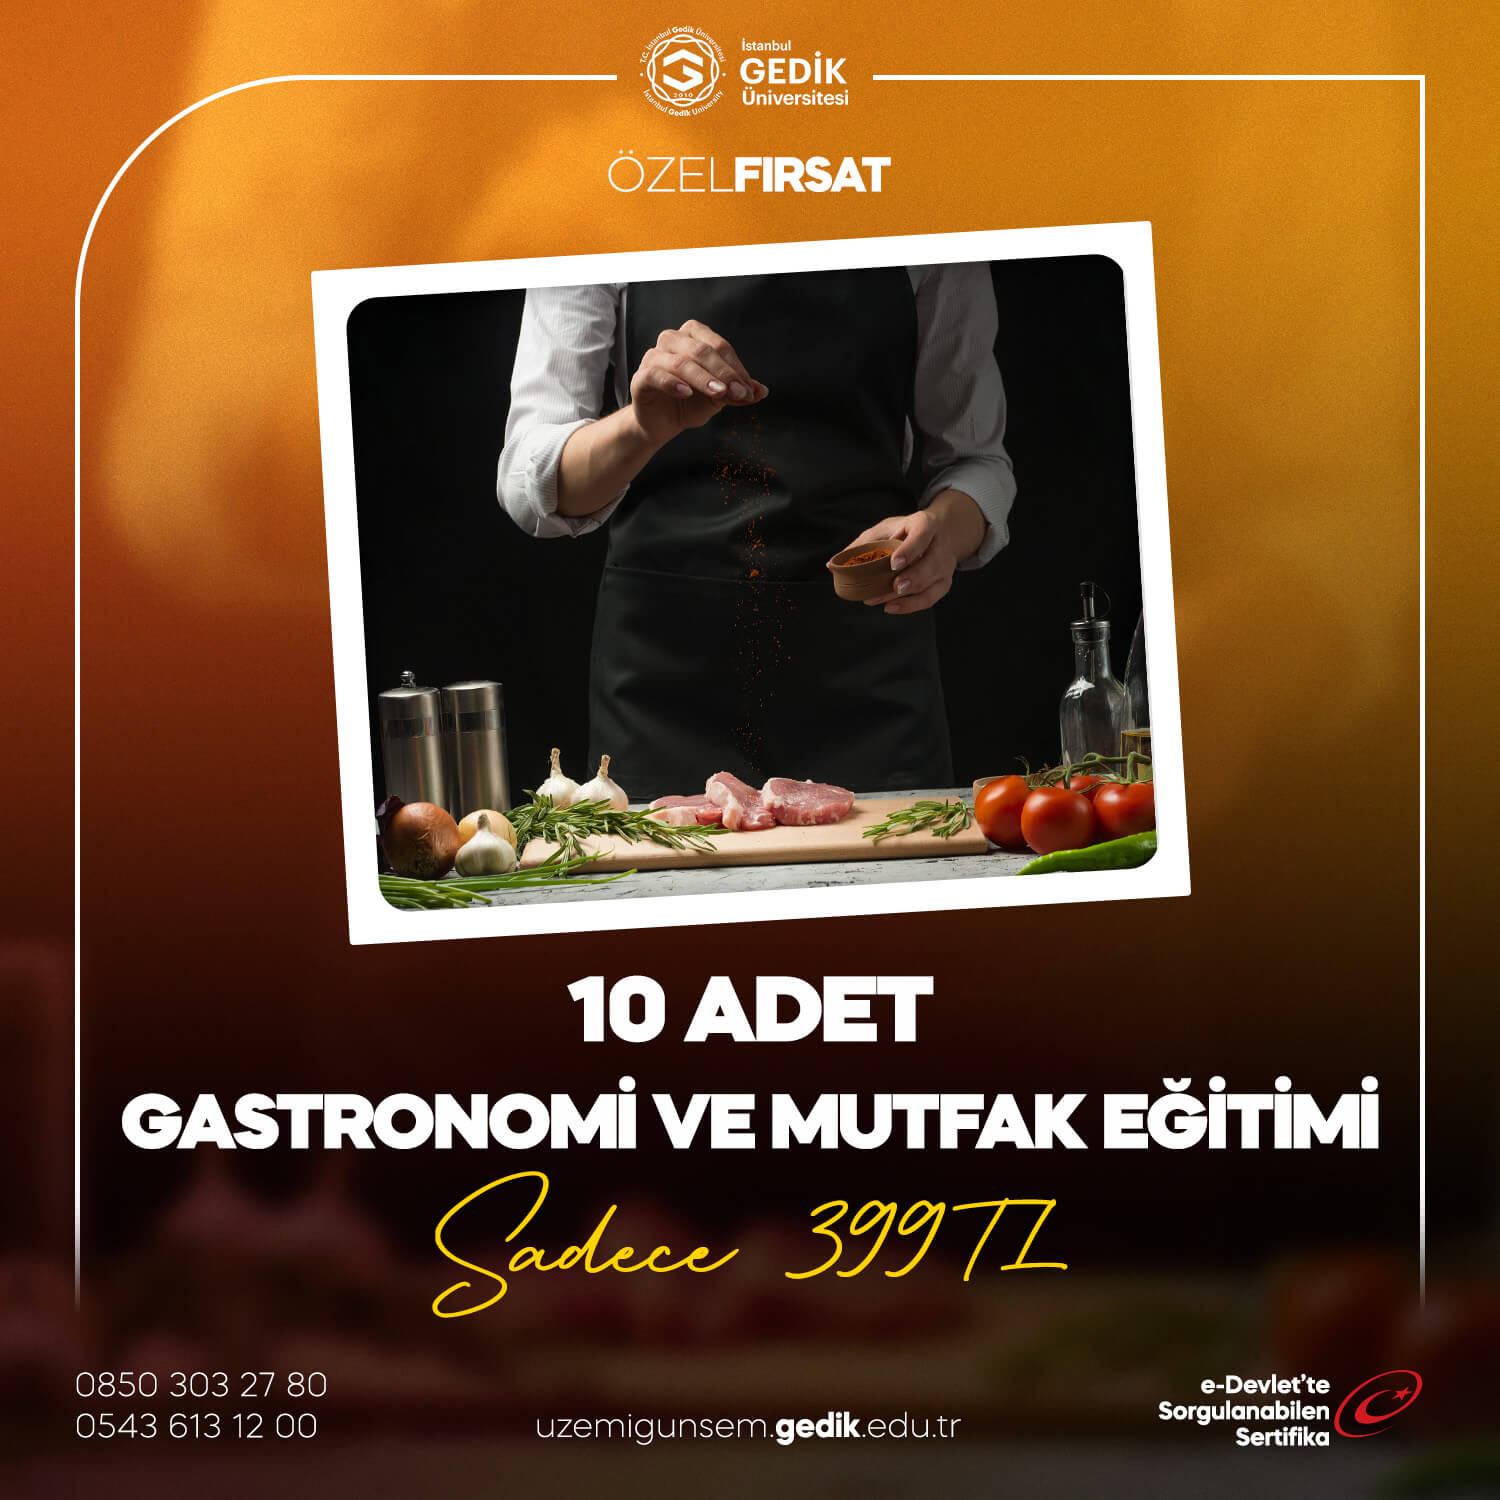 Gastronomi ve Mutfak Eğitimi (10) Adet 399TL!(AOF)